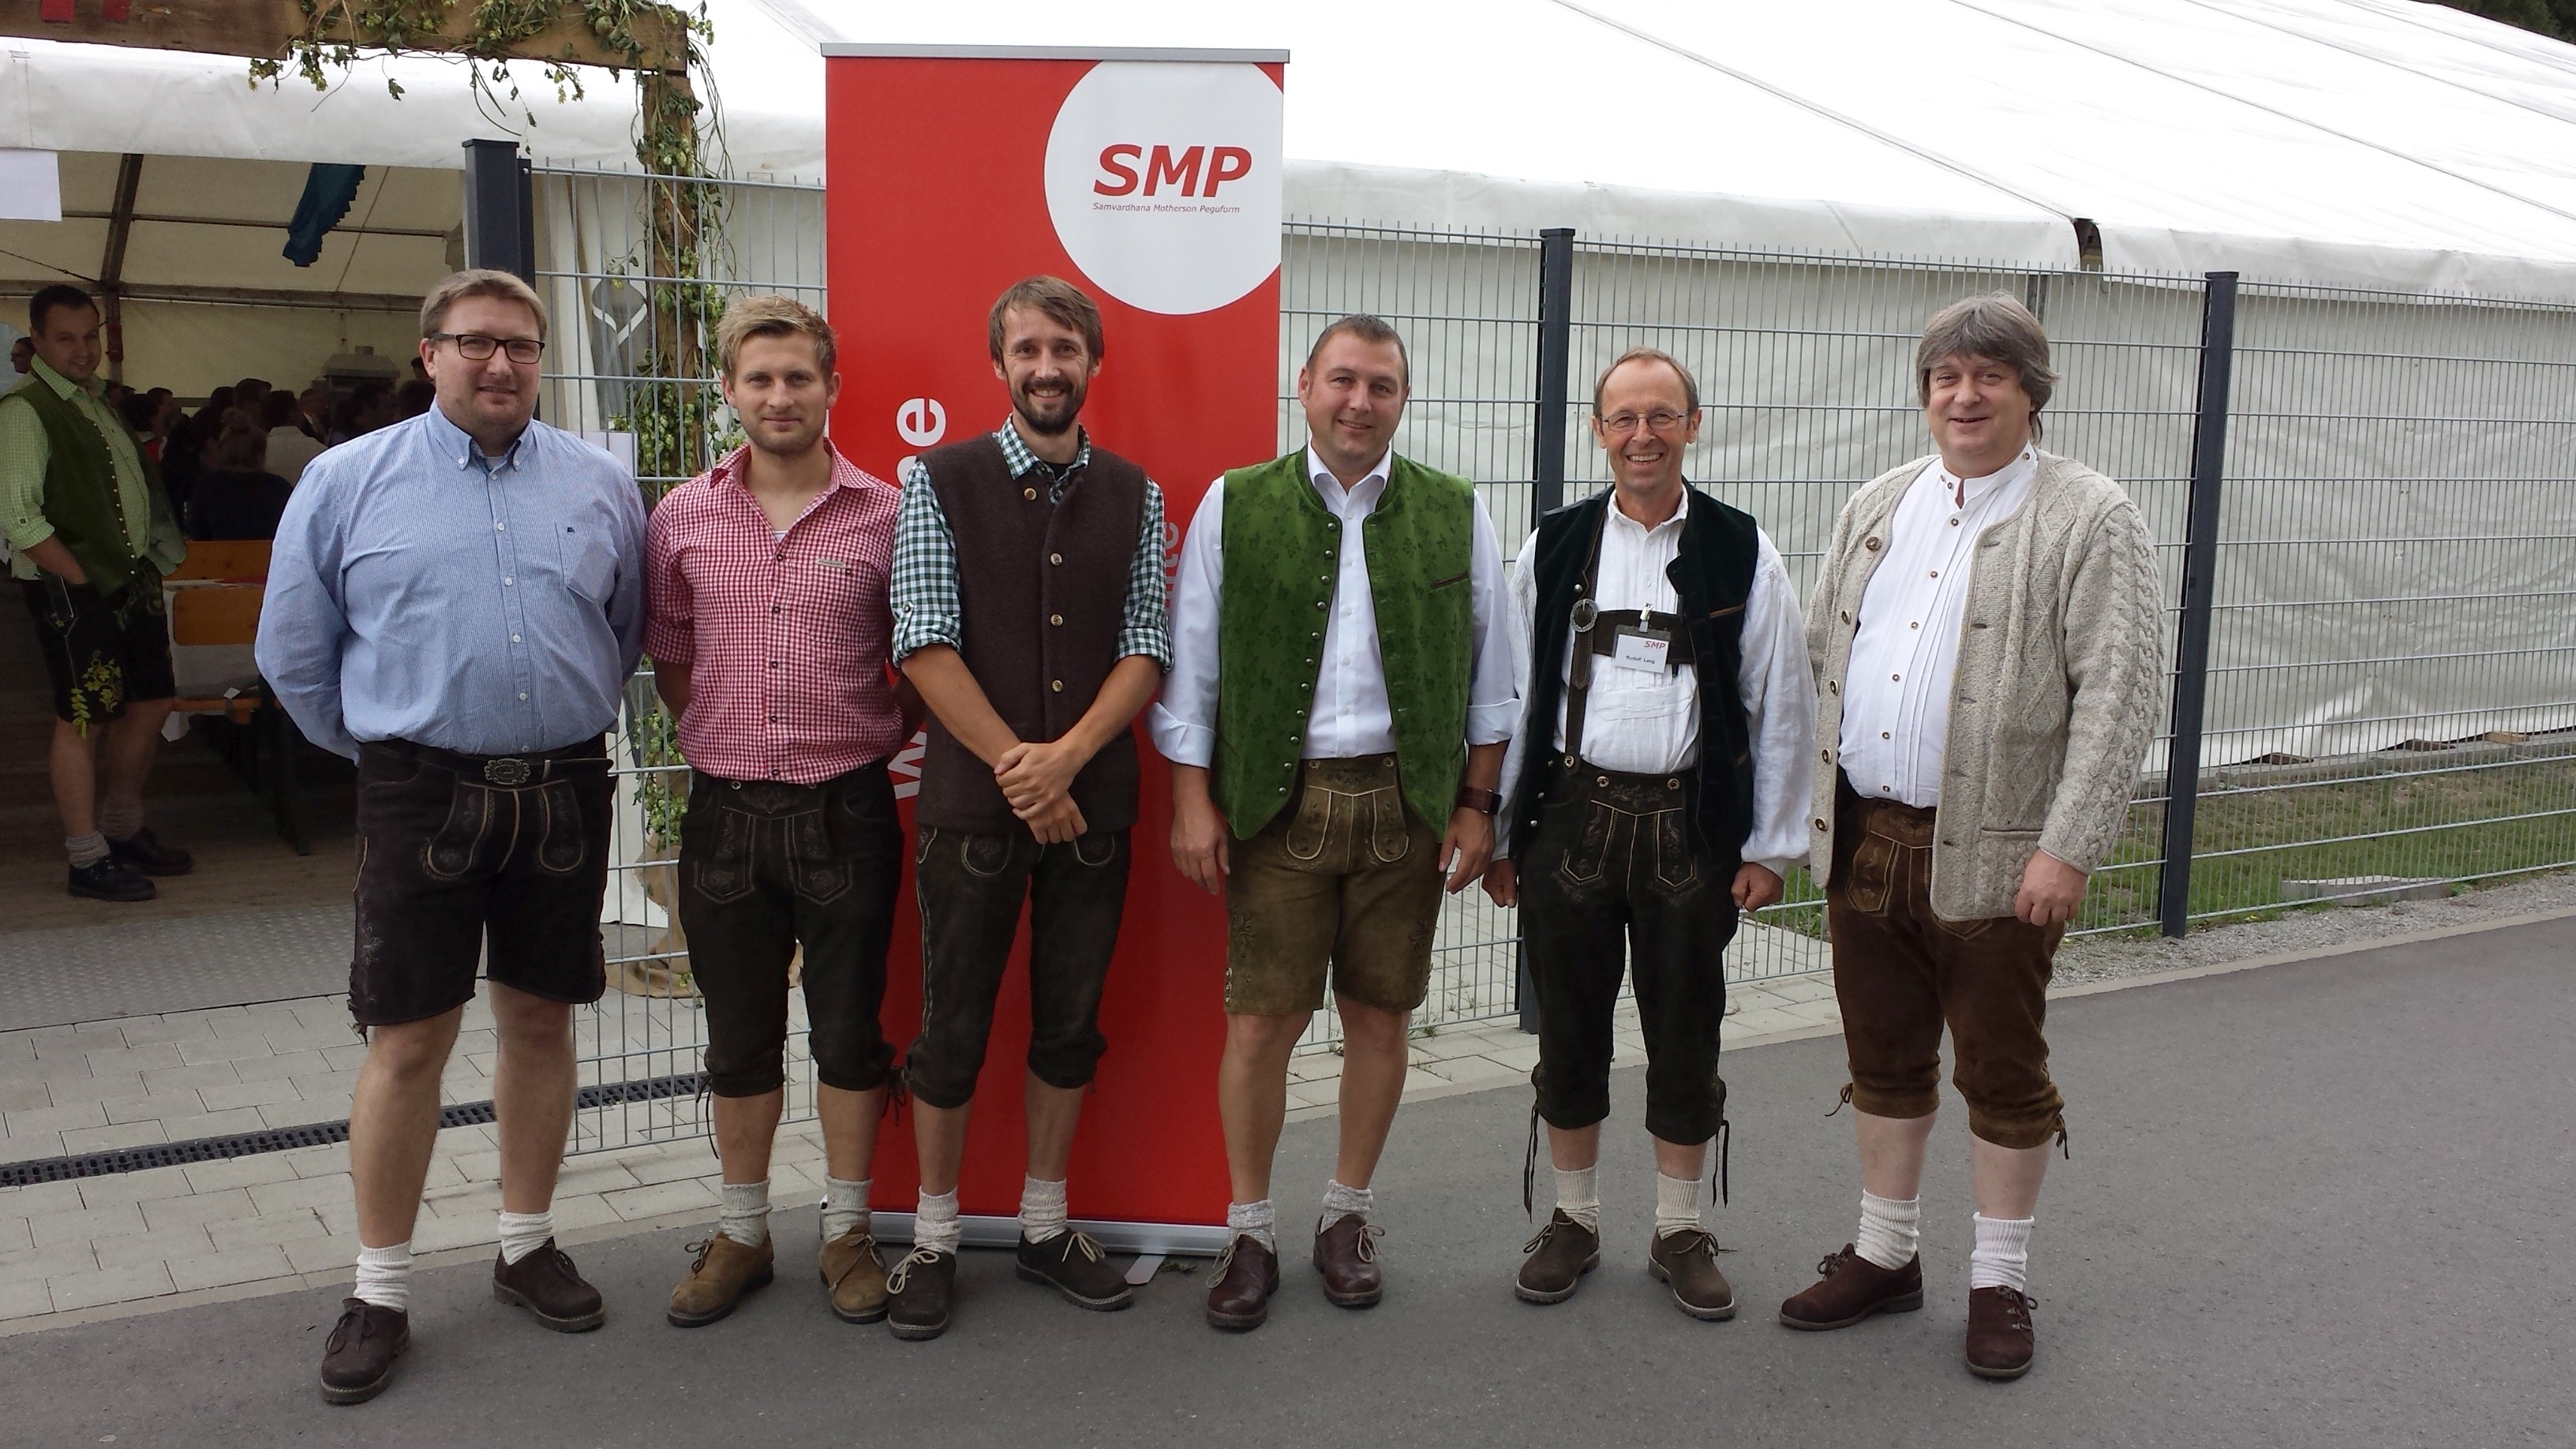 Stefan Schmid, Florian Frisch, Marcel Lorenz, Peter Rappl - SMP, Rudolf Lang - SMP, Berhard Kaulich